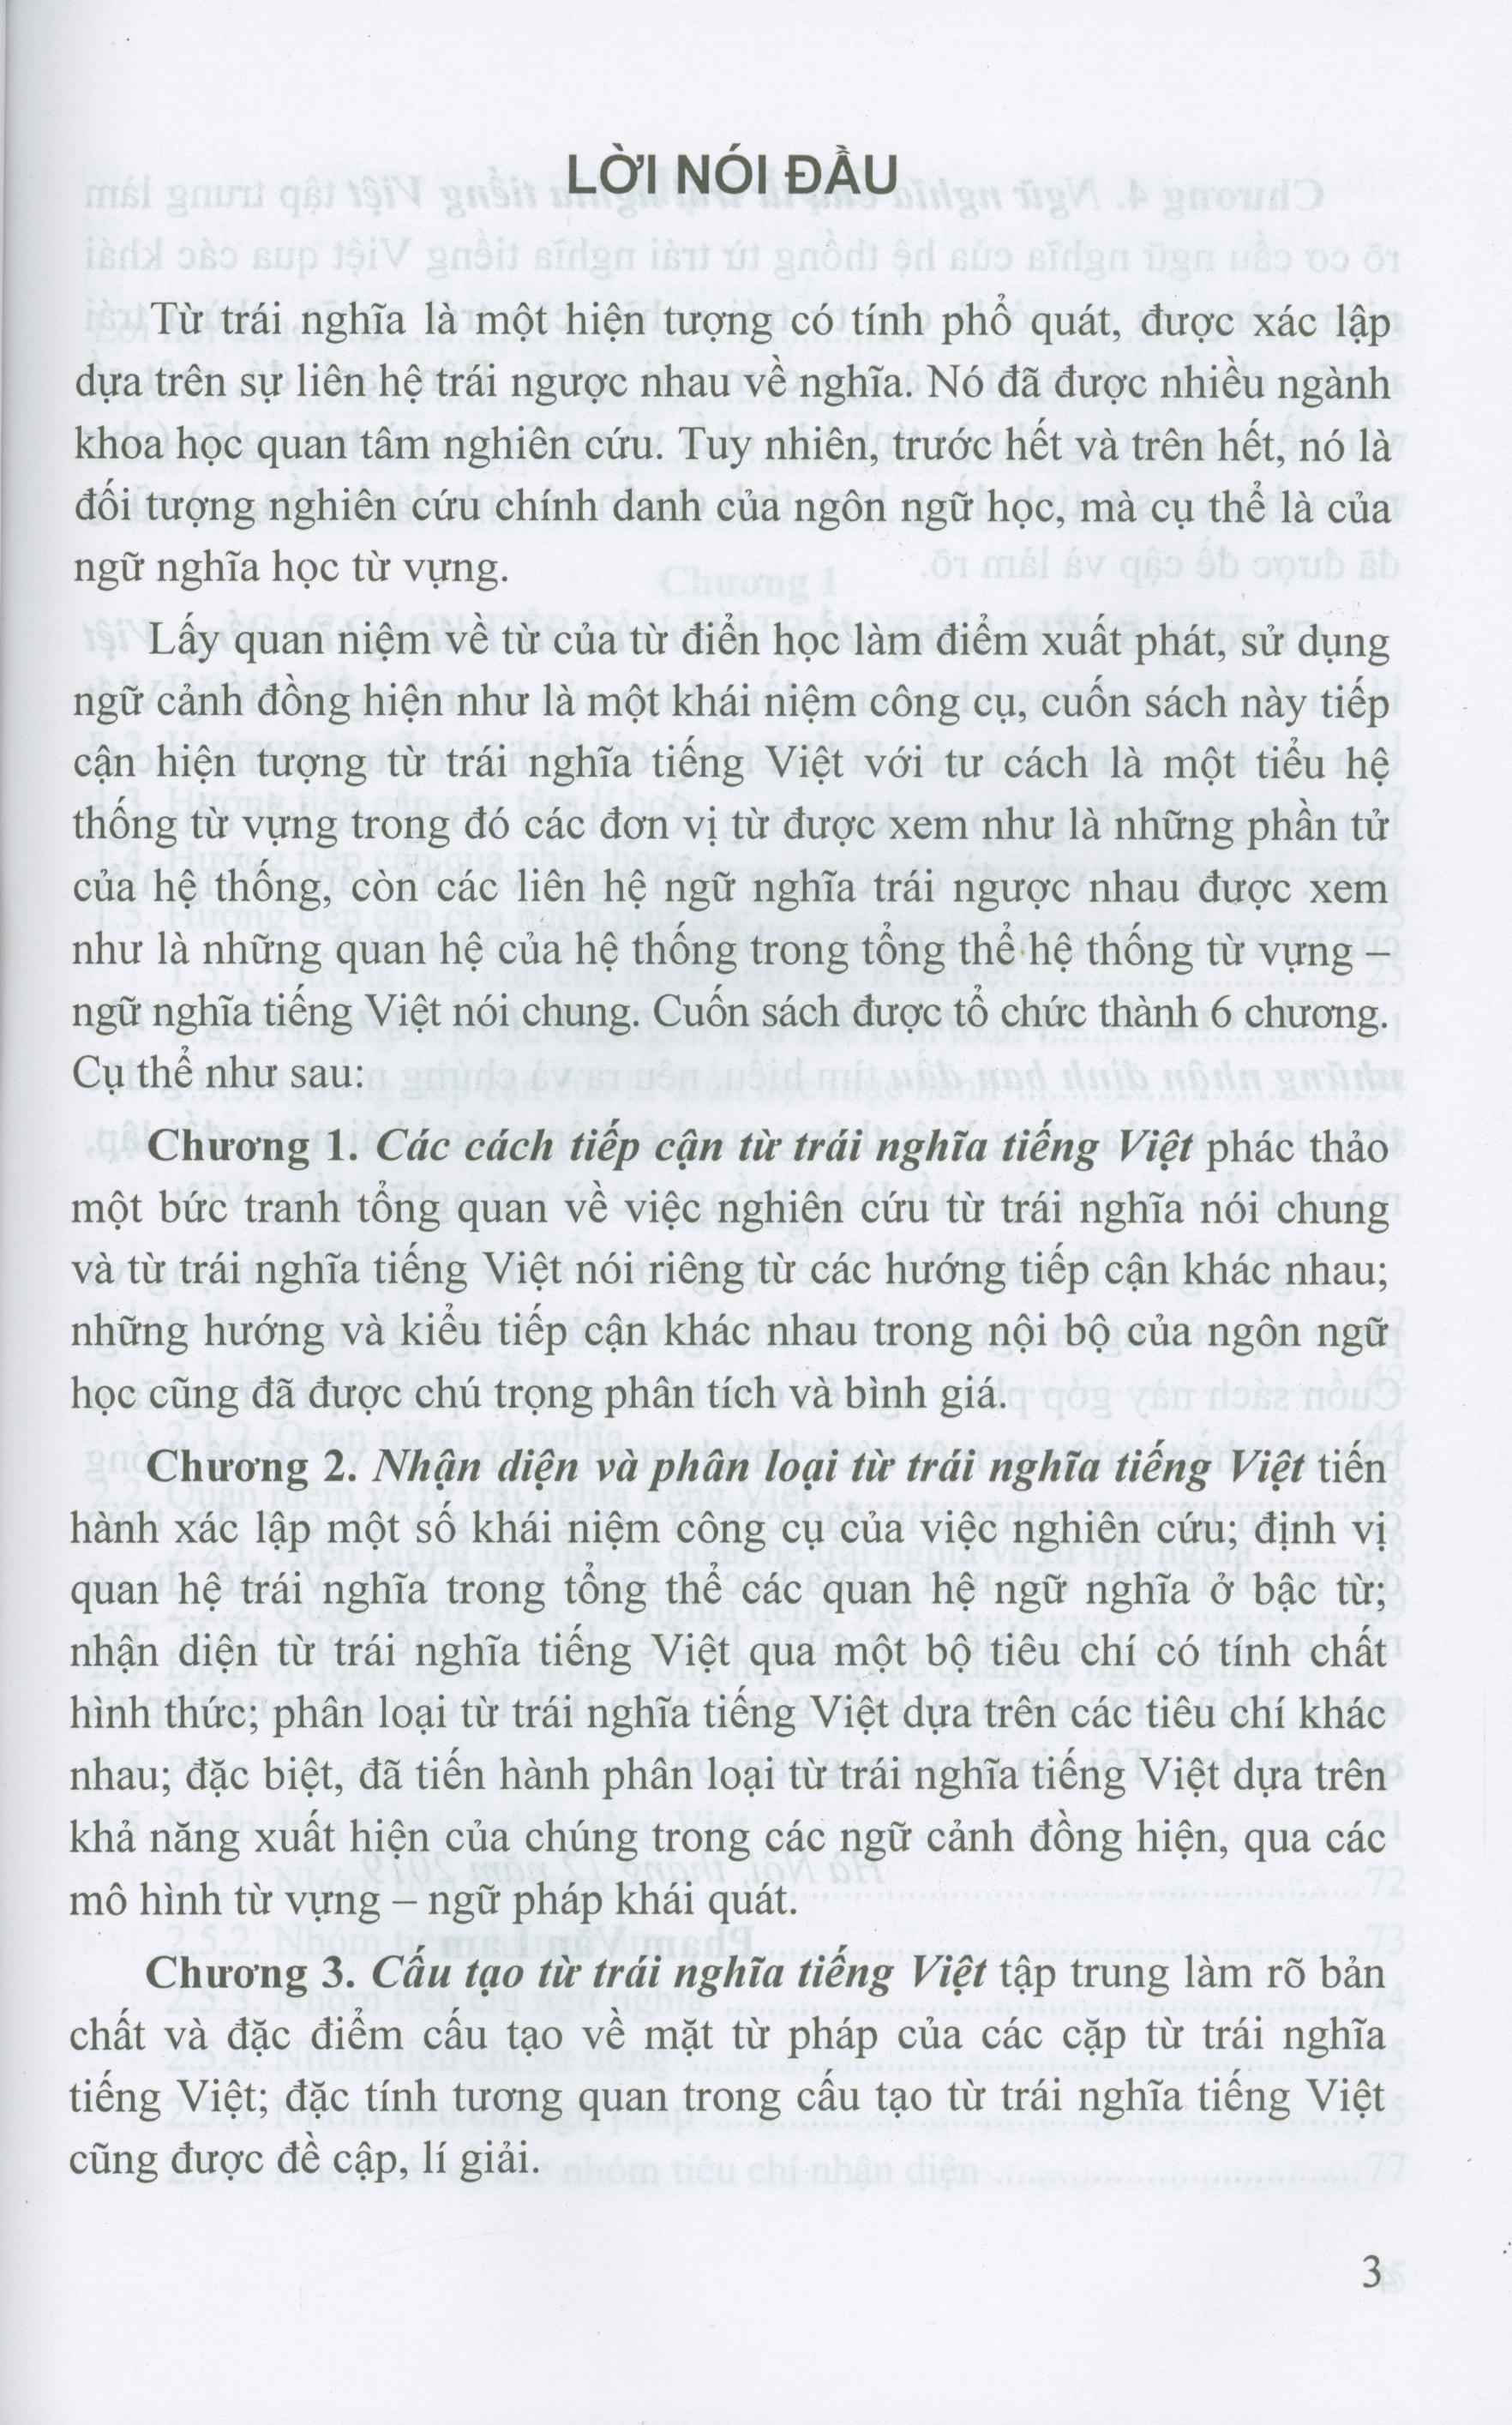 Từ Trái Nghĩa Tiếng Việt (Sách chuyên khảo)